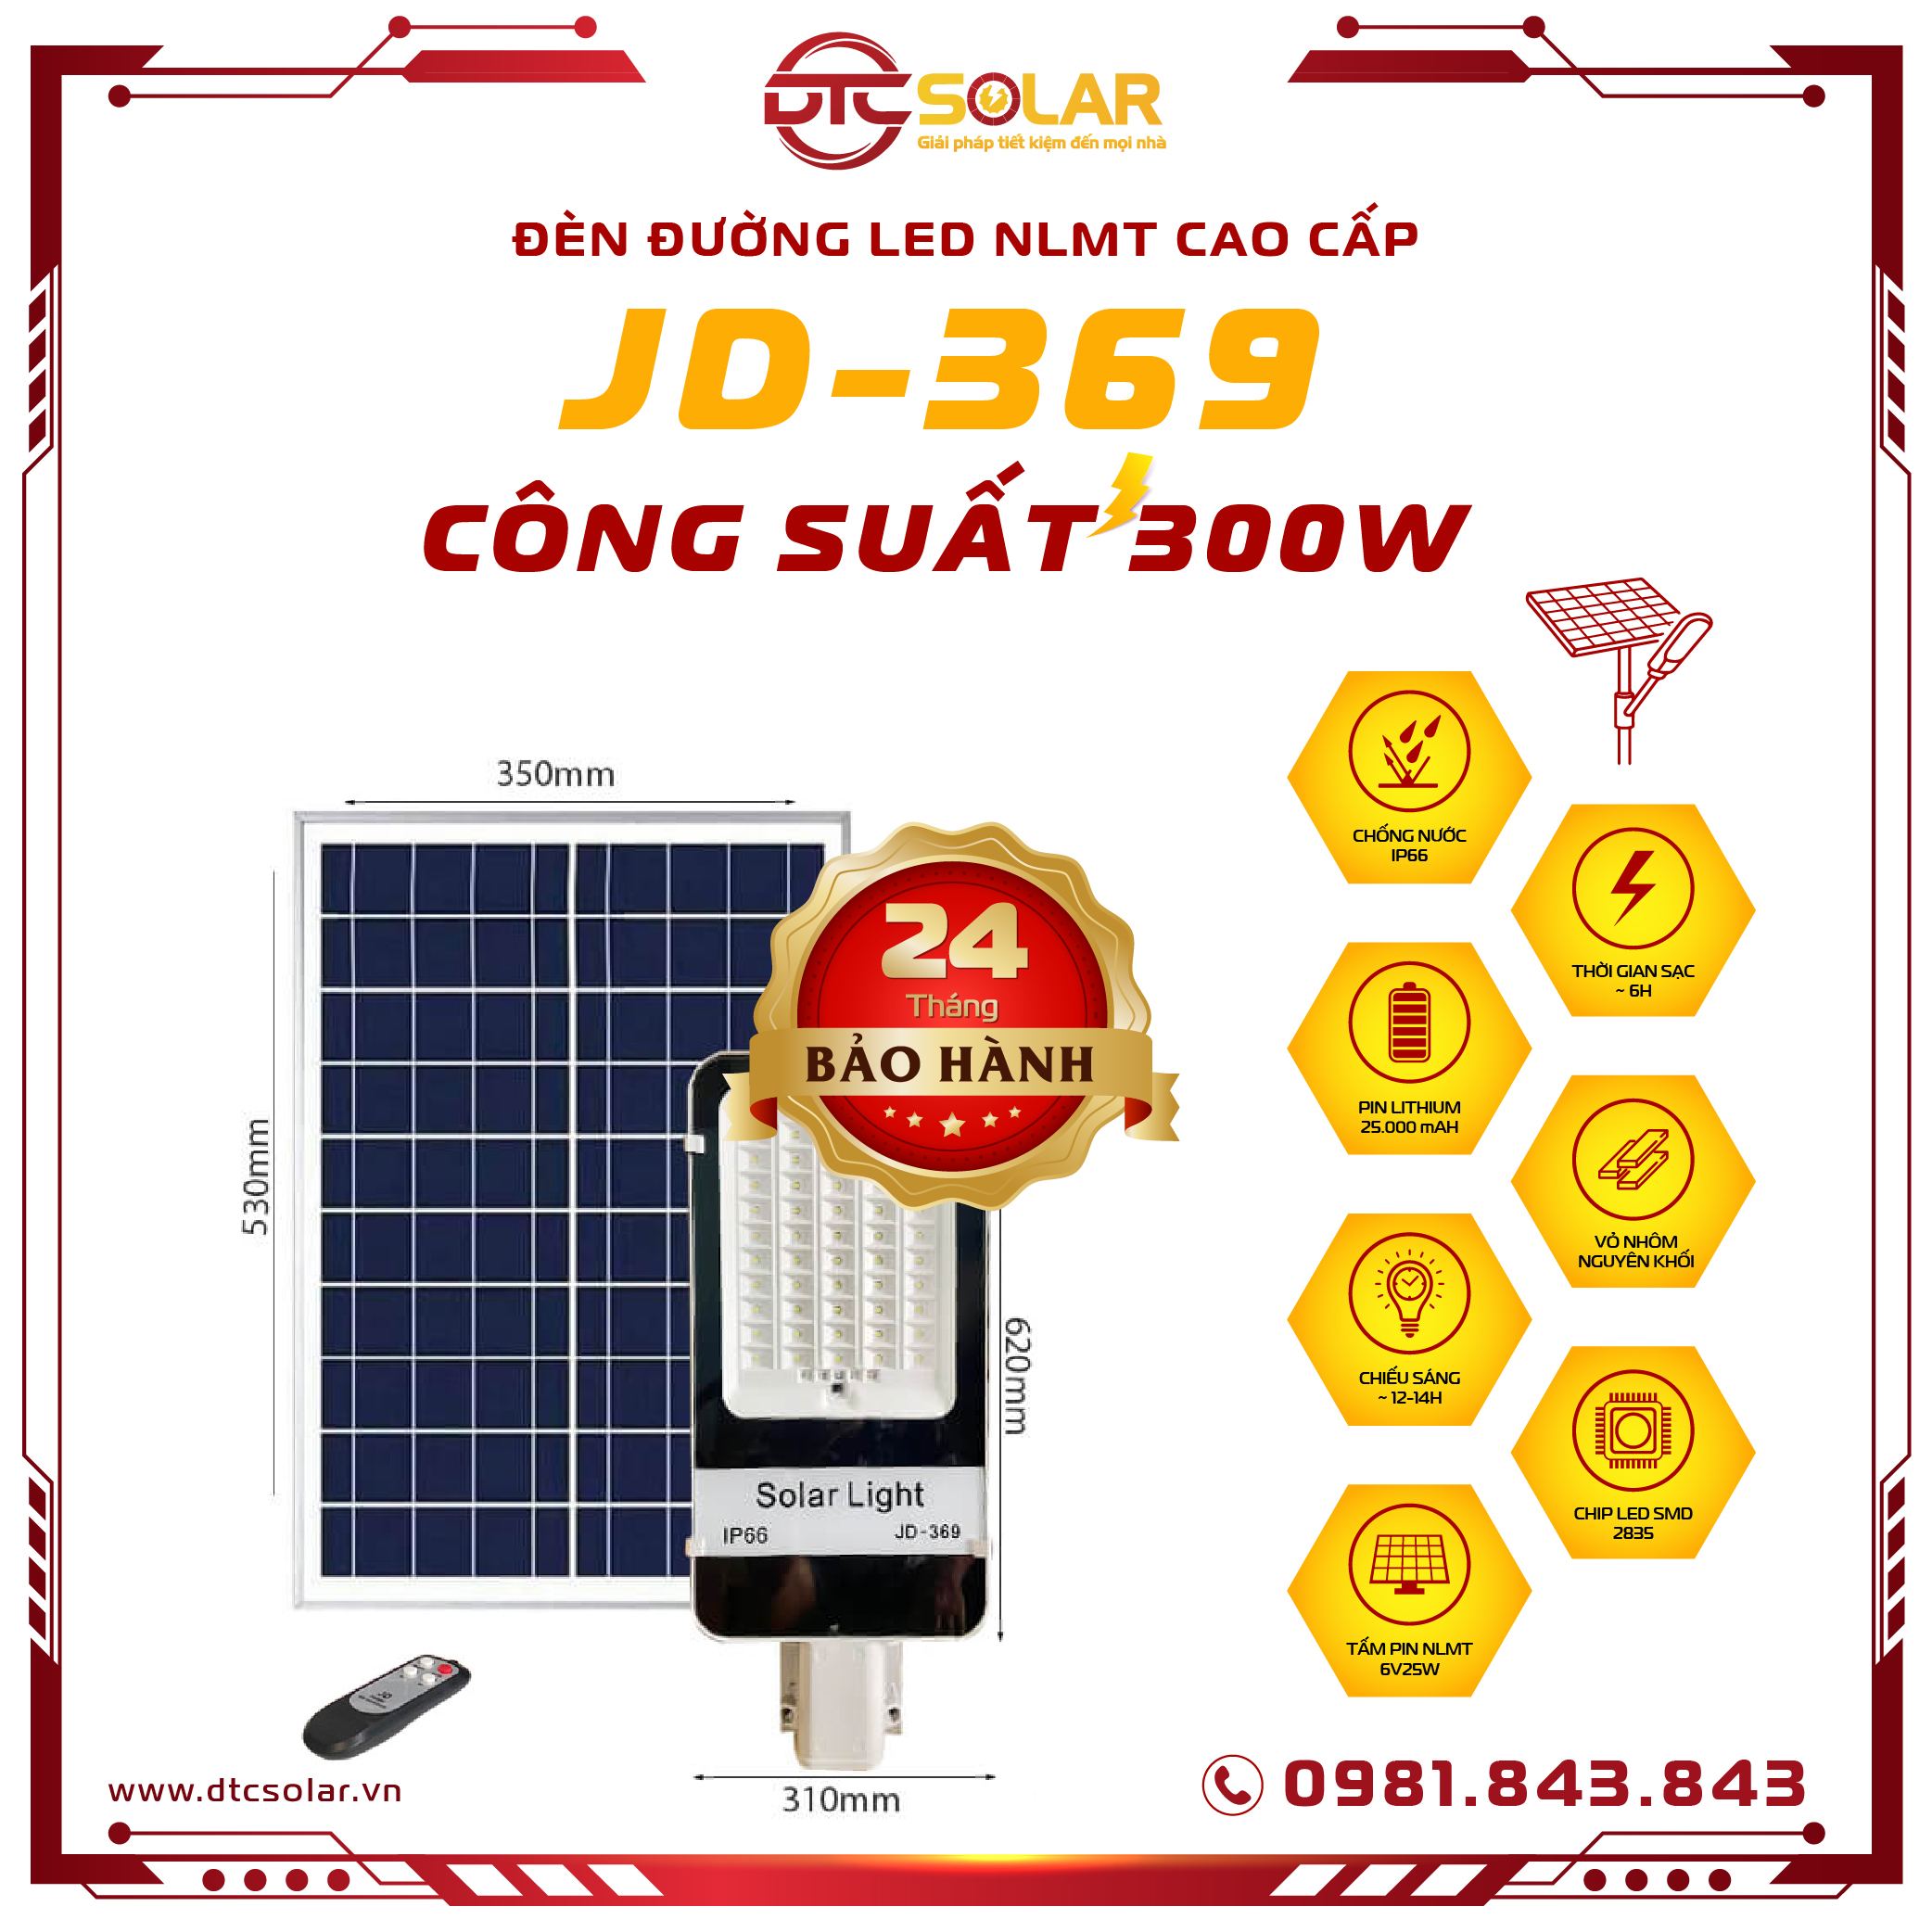 Đèn đường năng lượng mặt trời 300W Jindian JD369 chính hãng Bảo hành 24